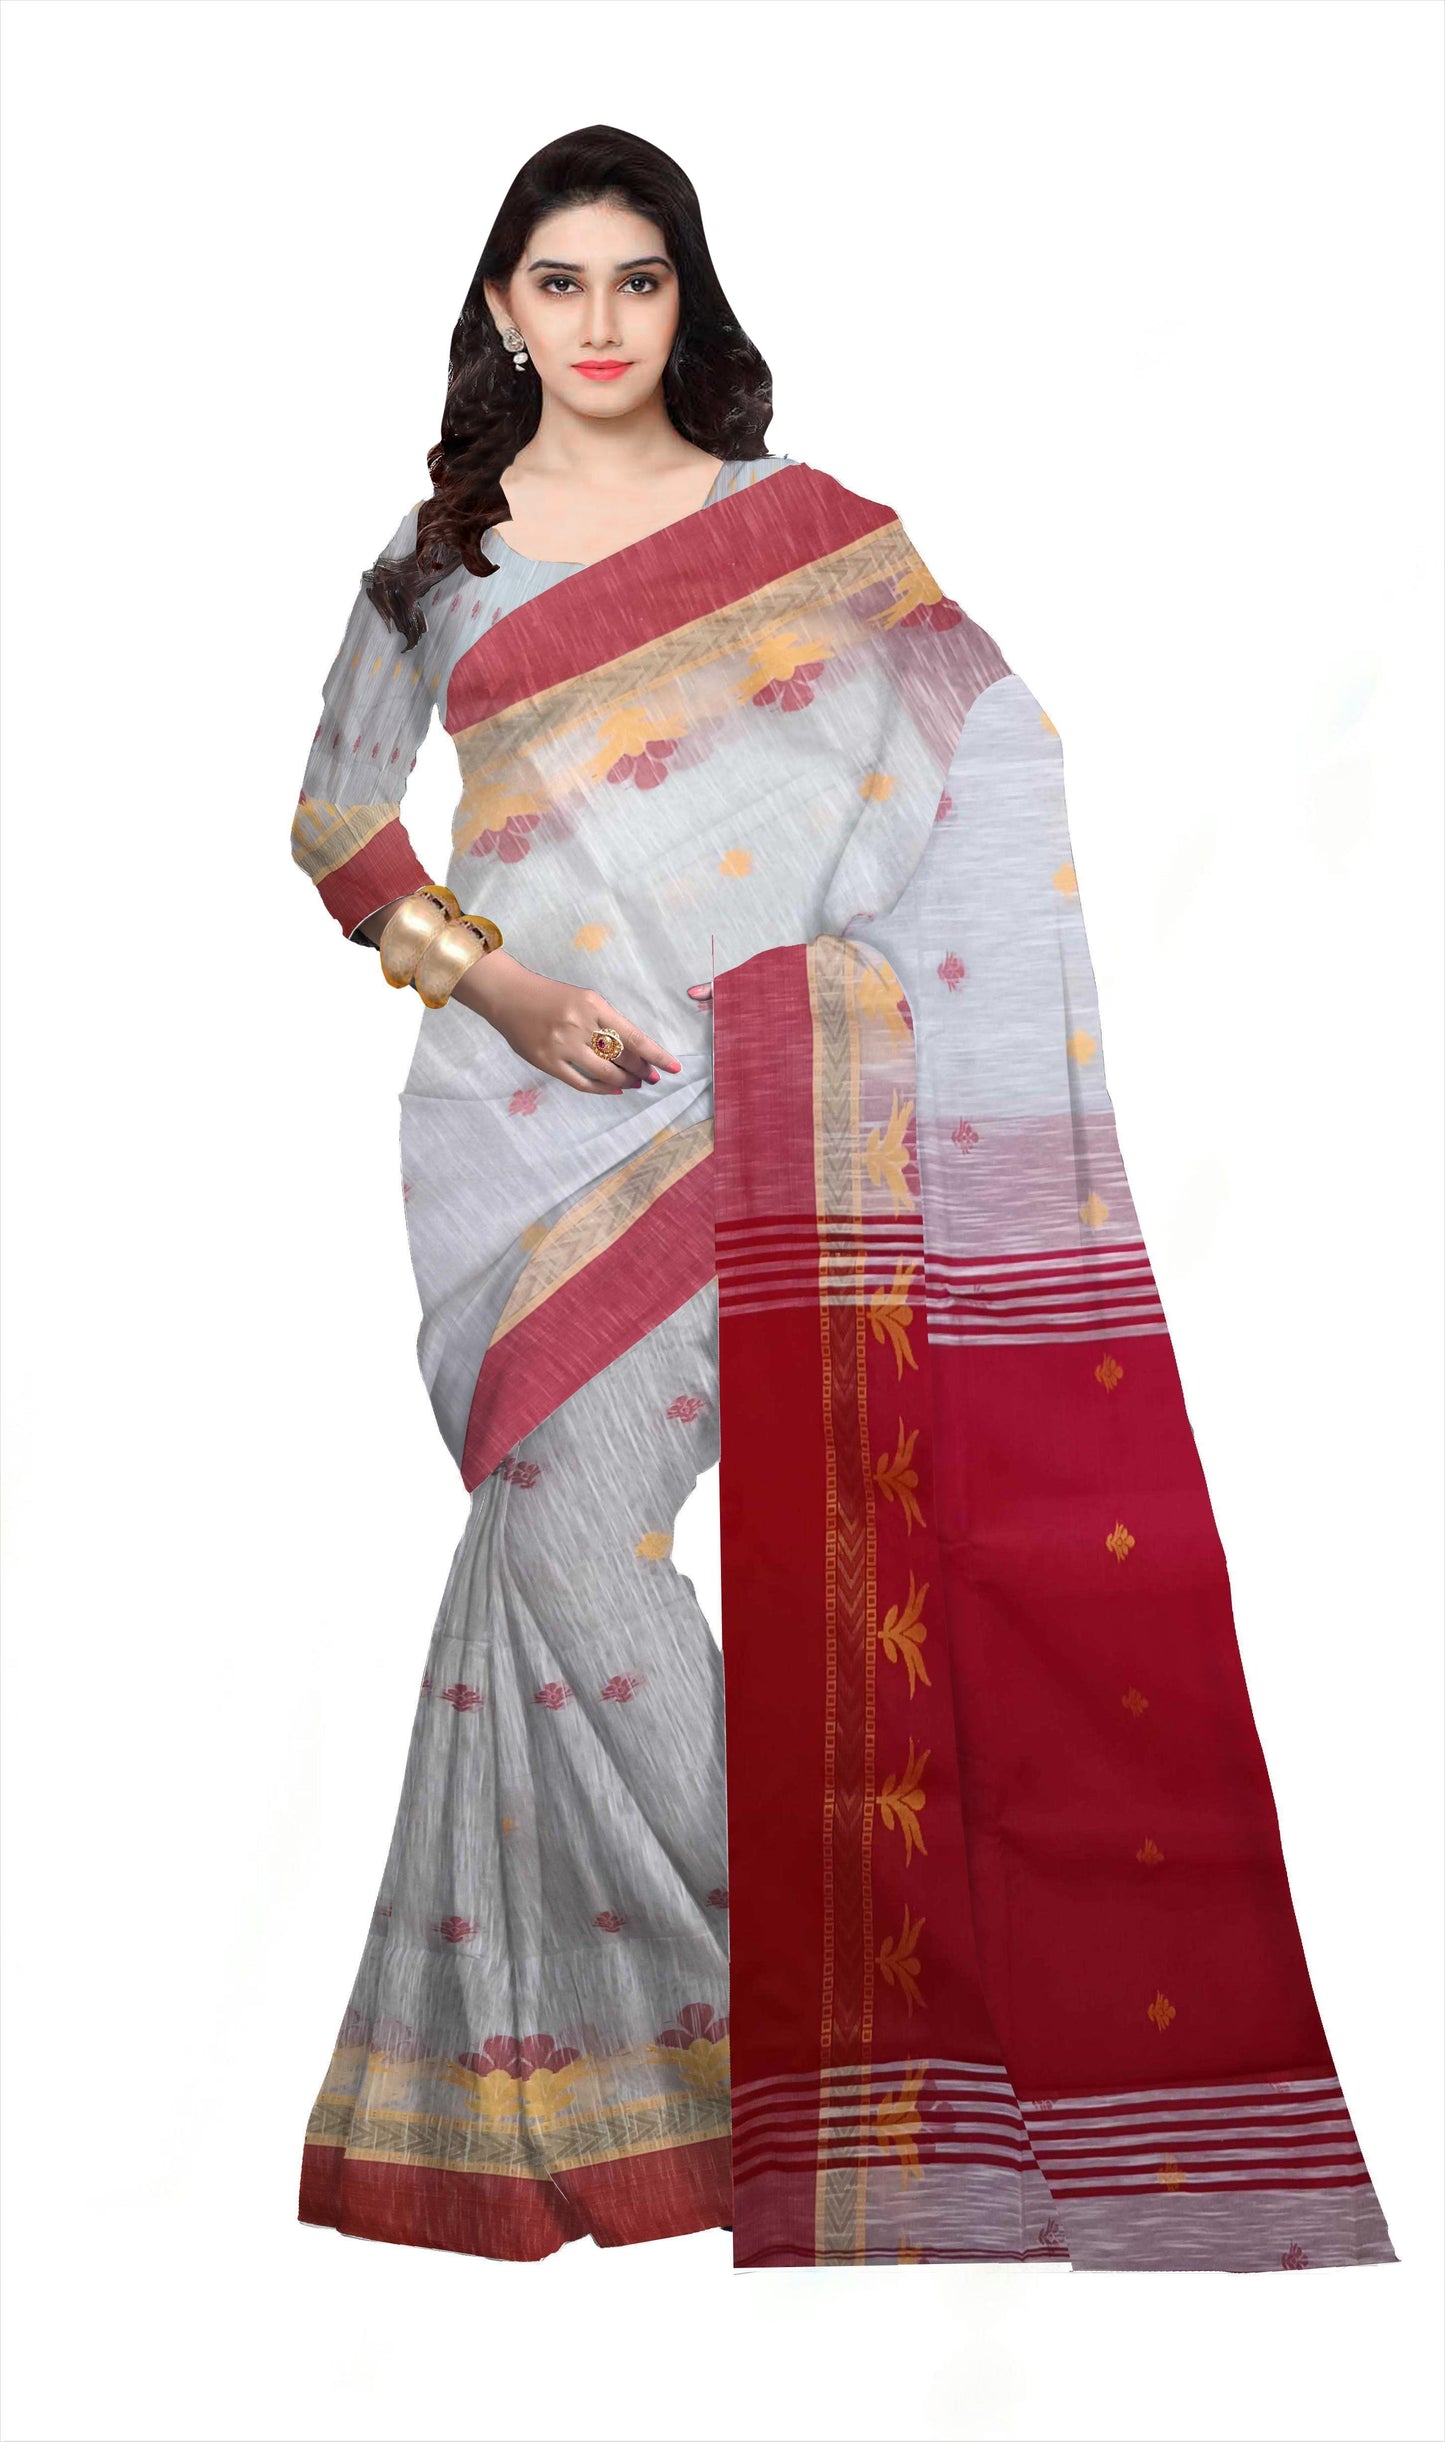 Pradip Fabrics Woman's 100% Khadi cotton Saree